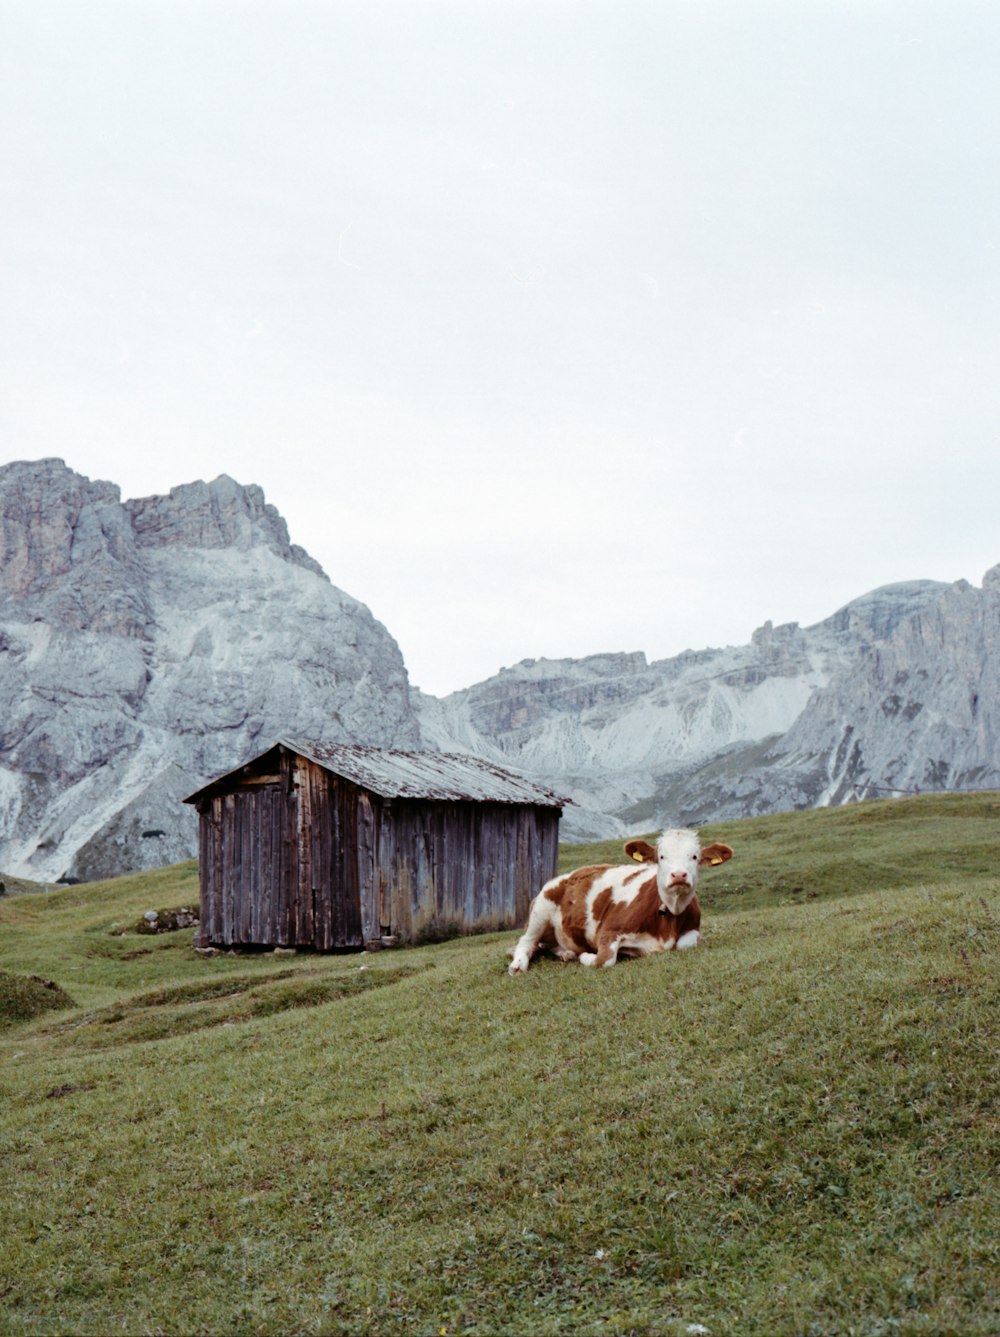 vache brune et blanche sur un champ d’herbe verte près d’une maison en bois brune pendant la journée